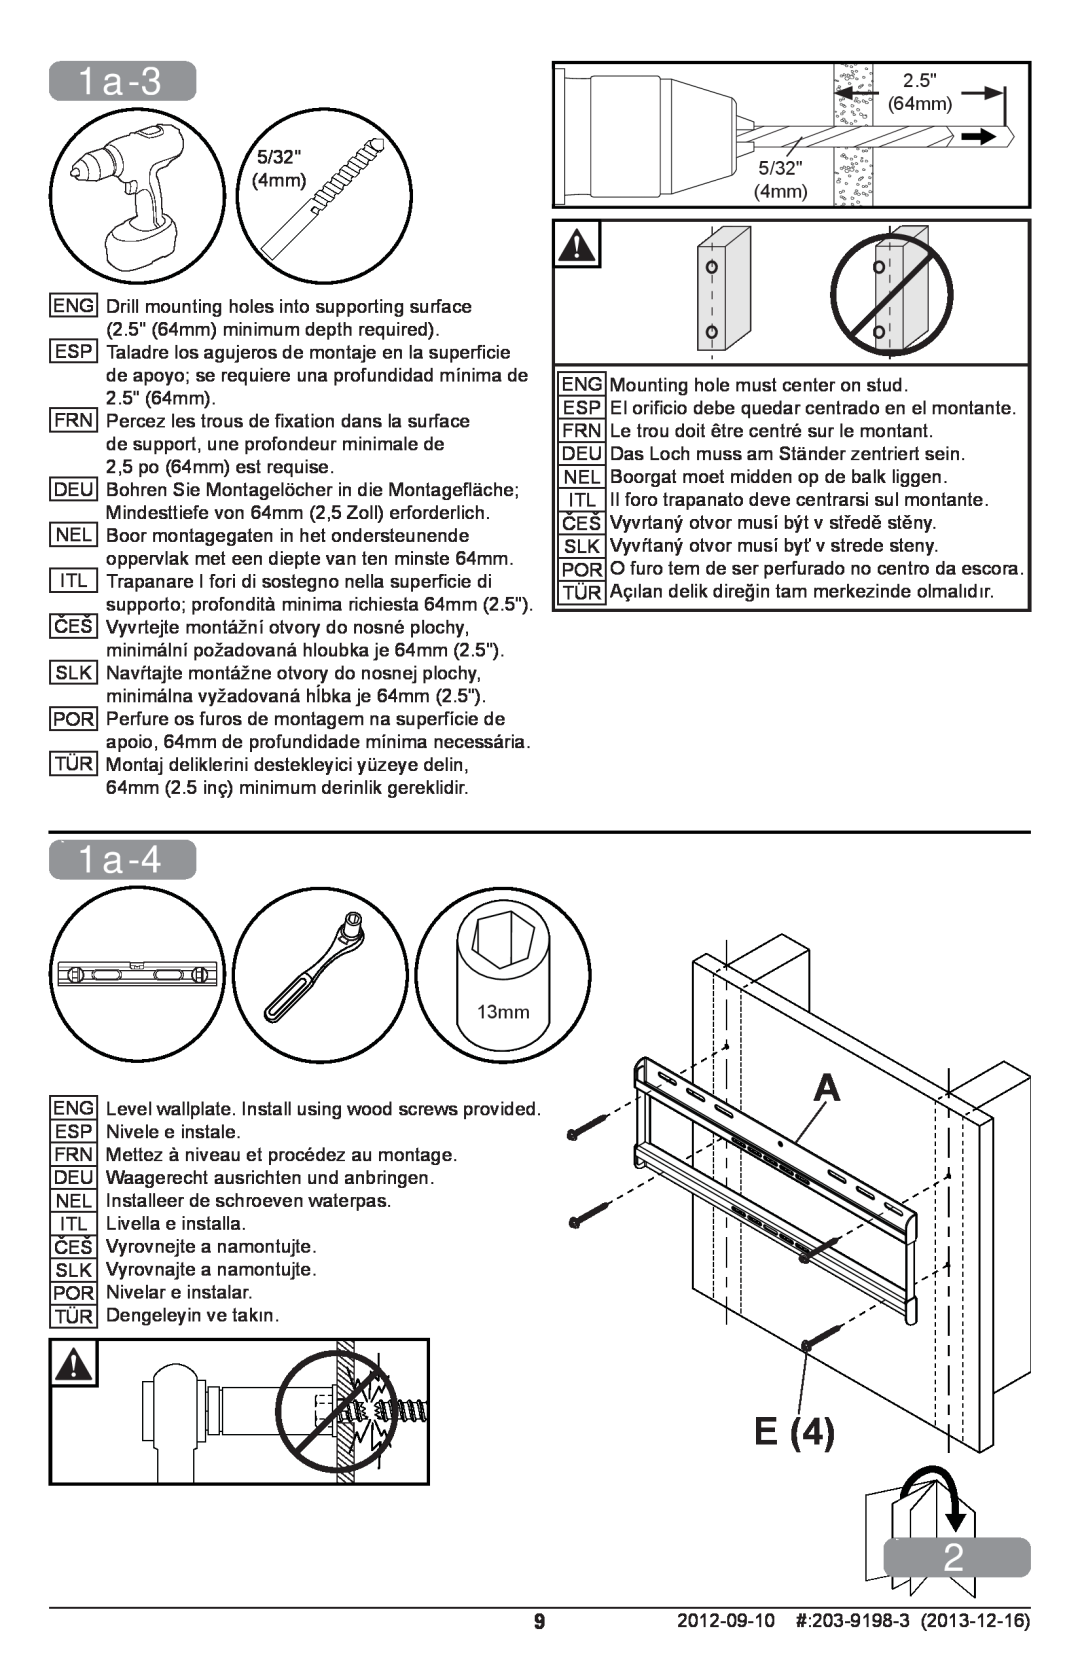 Peerless Industries SFL646 manual 1a-3, 1a-4, supporto profondità minima richiesta 64mm 